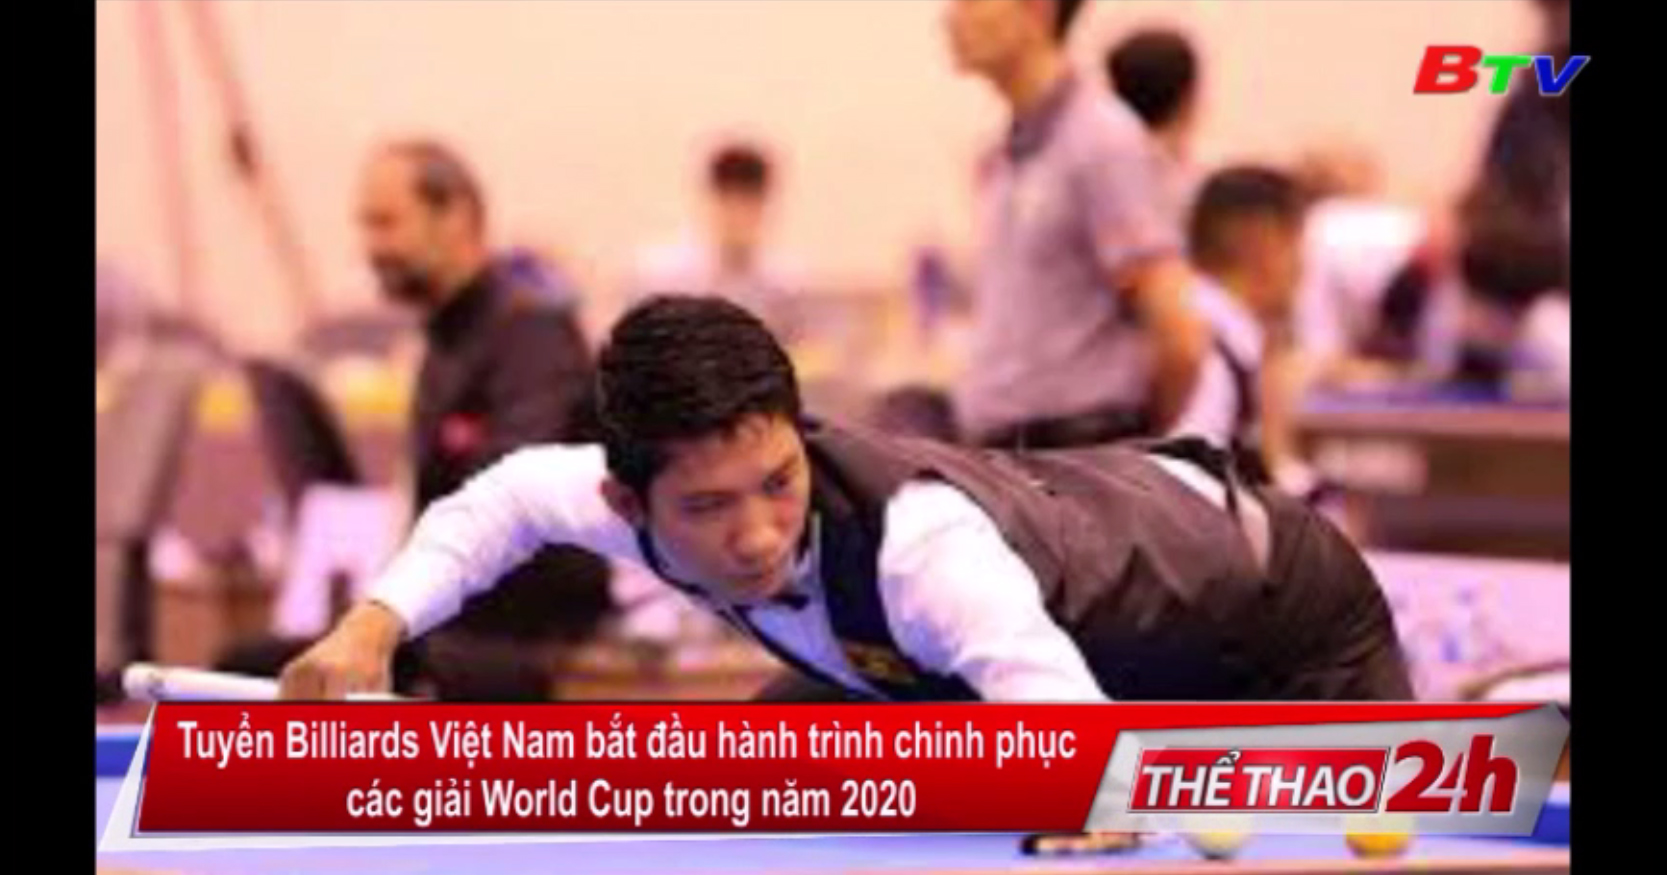 Tuyển Billiards Việt Nam bắt đầu hành trình chinh phục các giải World Cup trong năm 2020